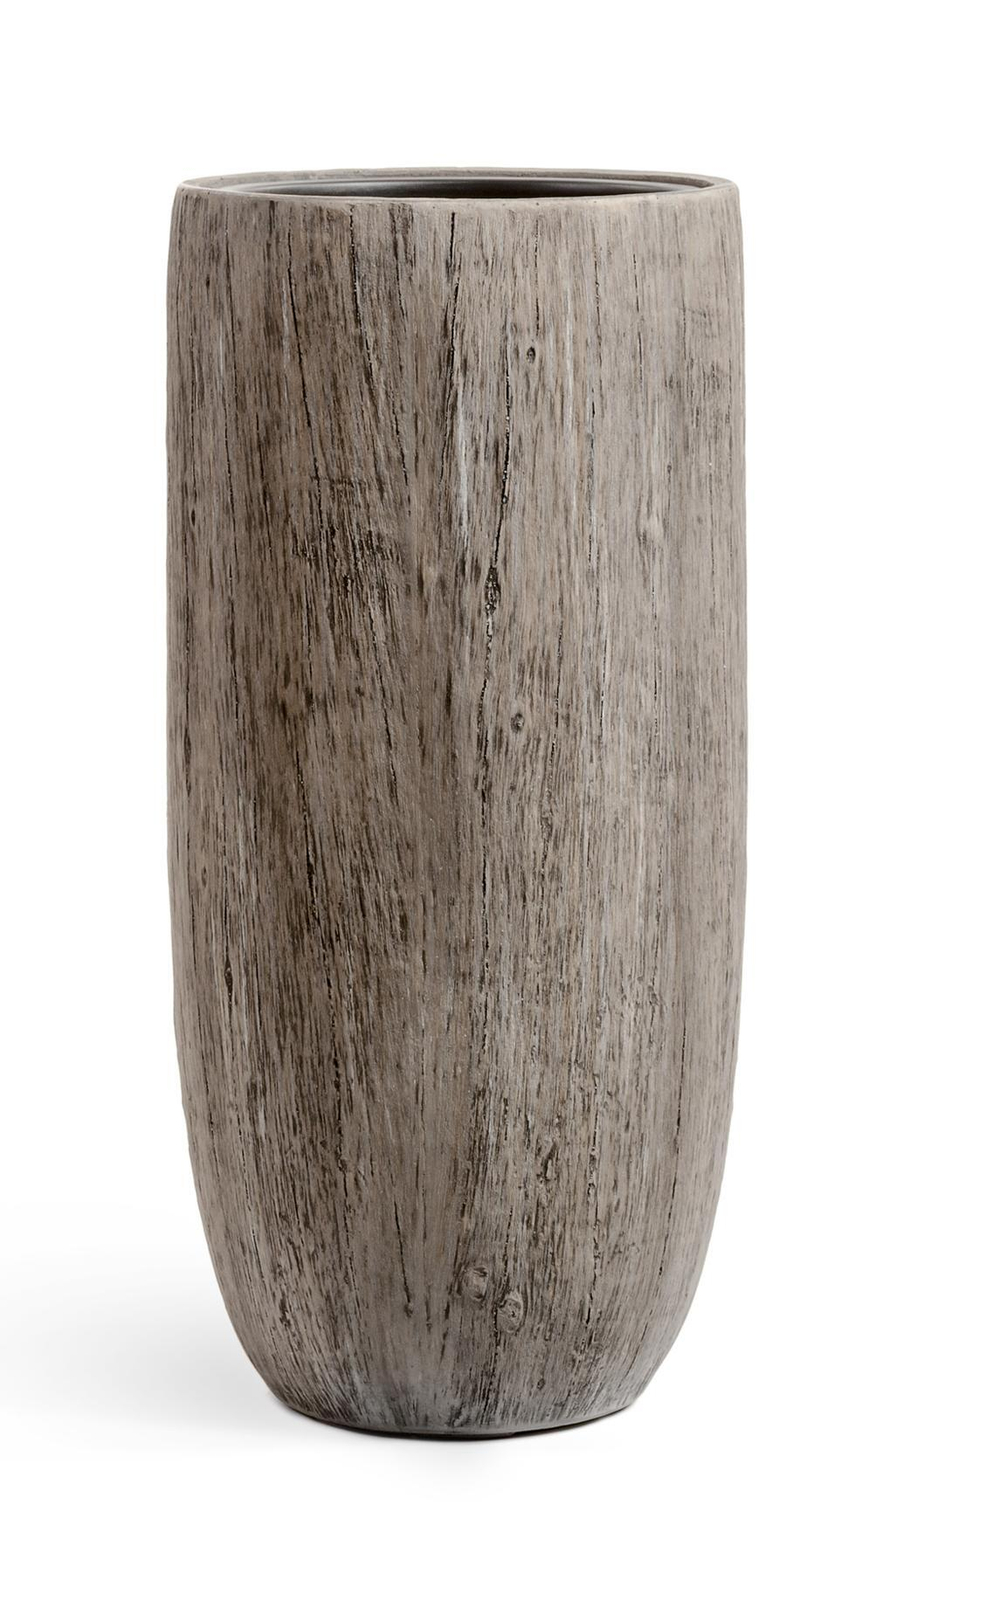 Кашпо TREEZ Effectory - Wood - Высокий округлый конус - Белёный дуб